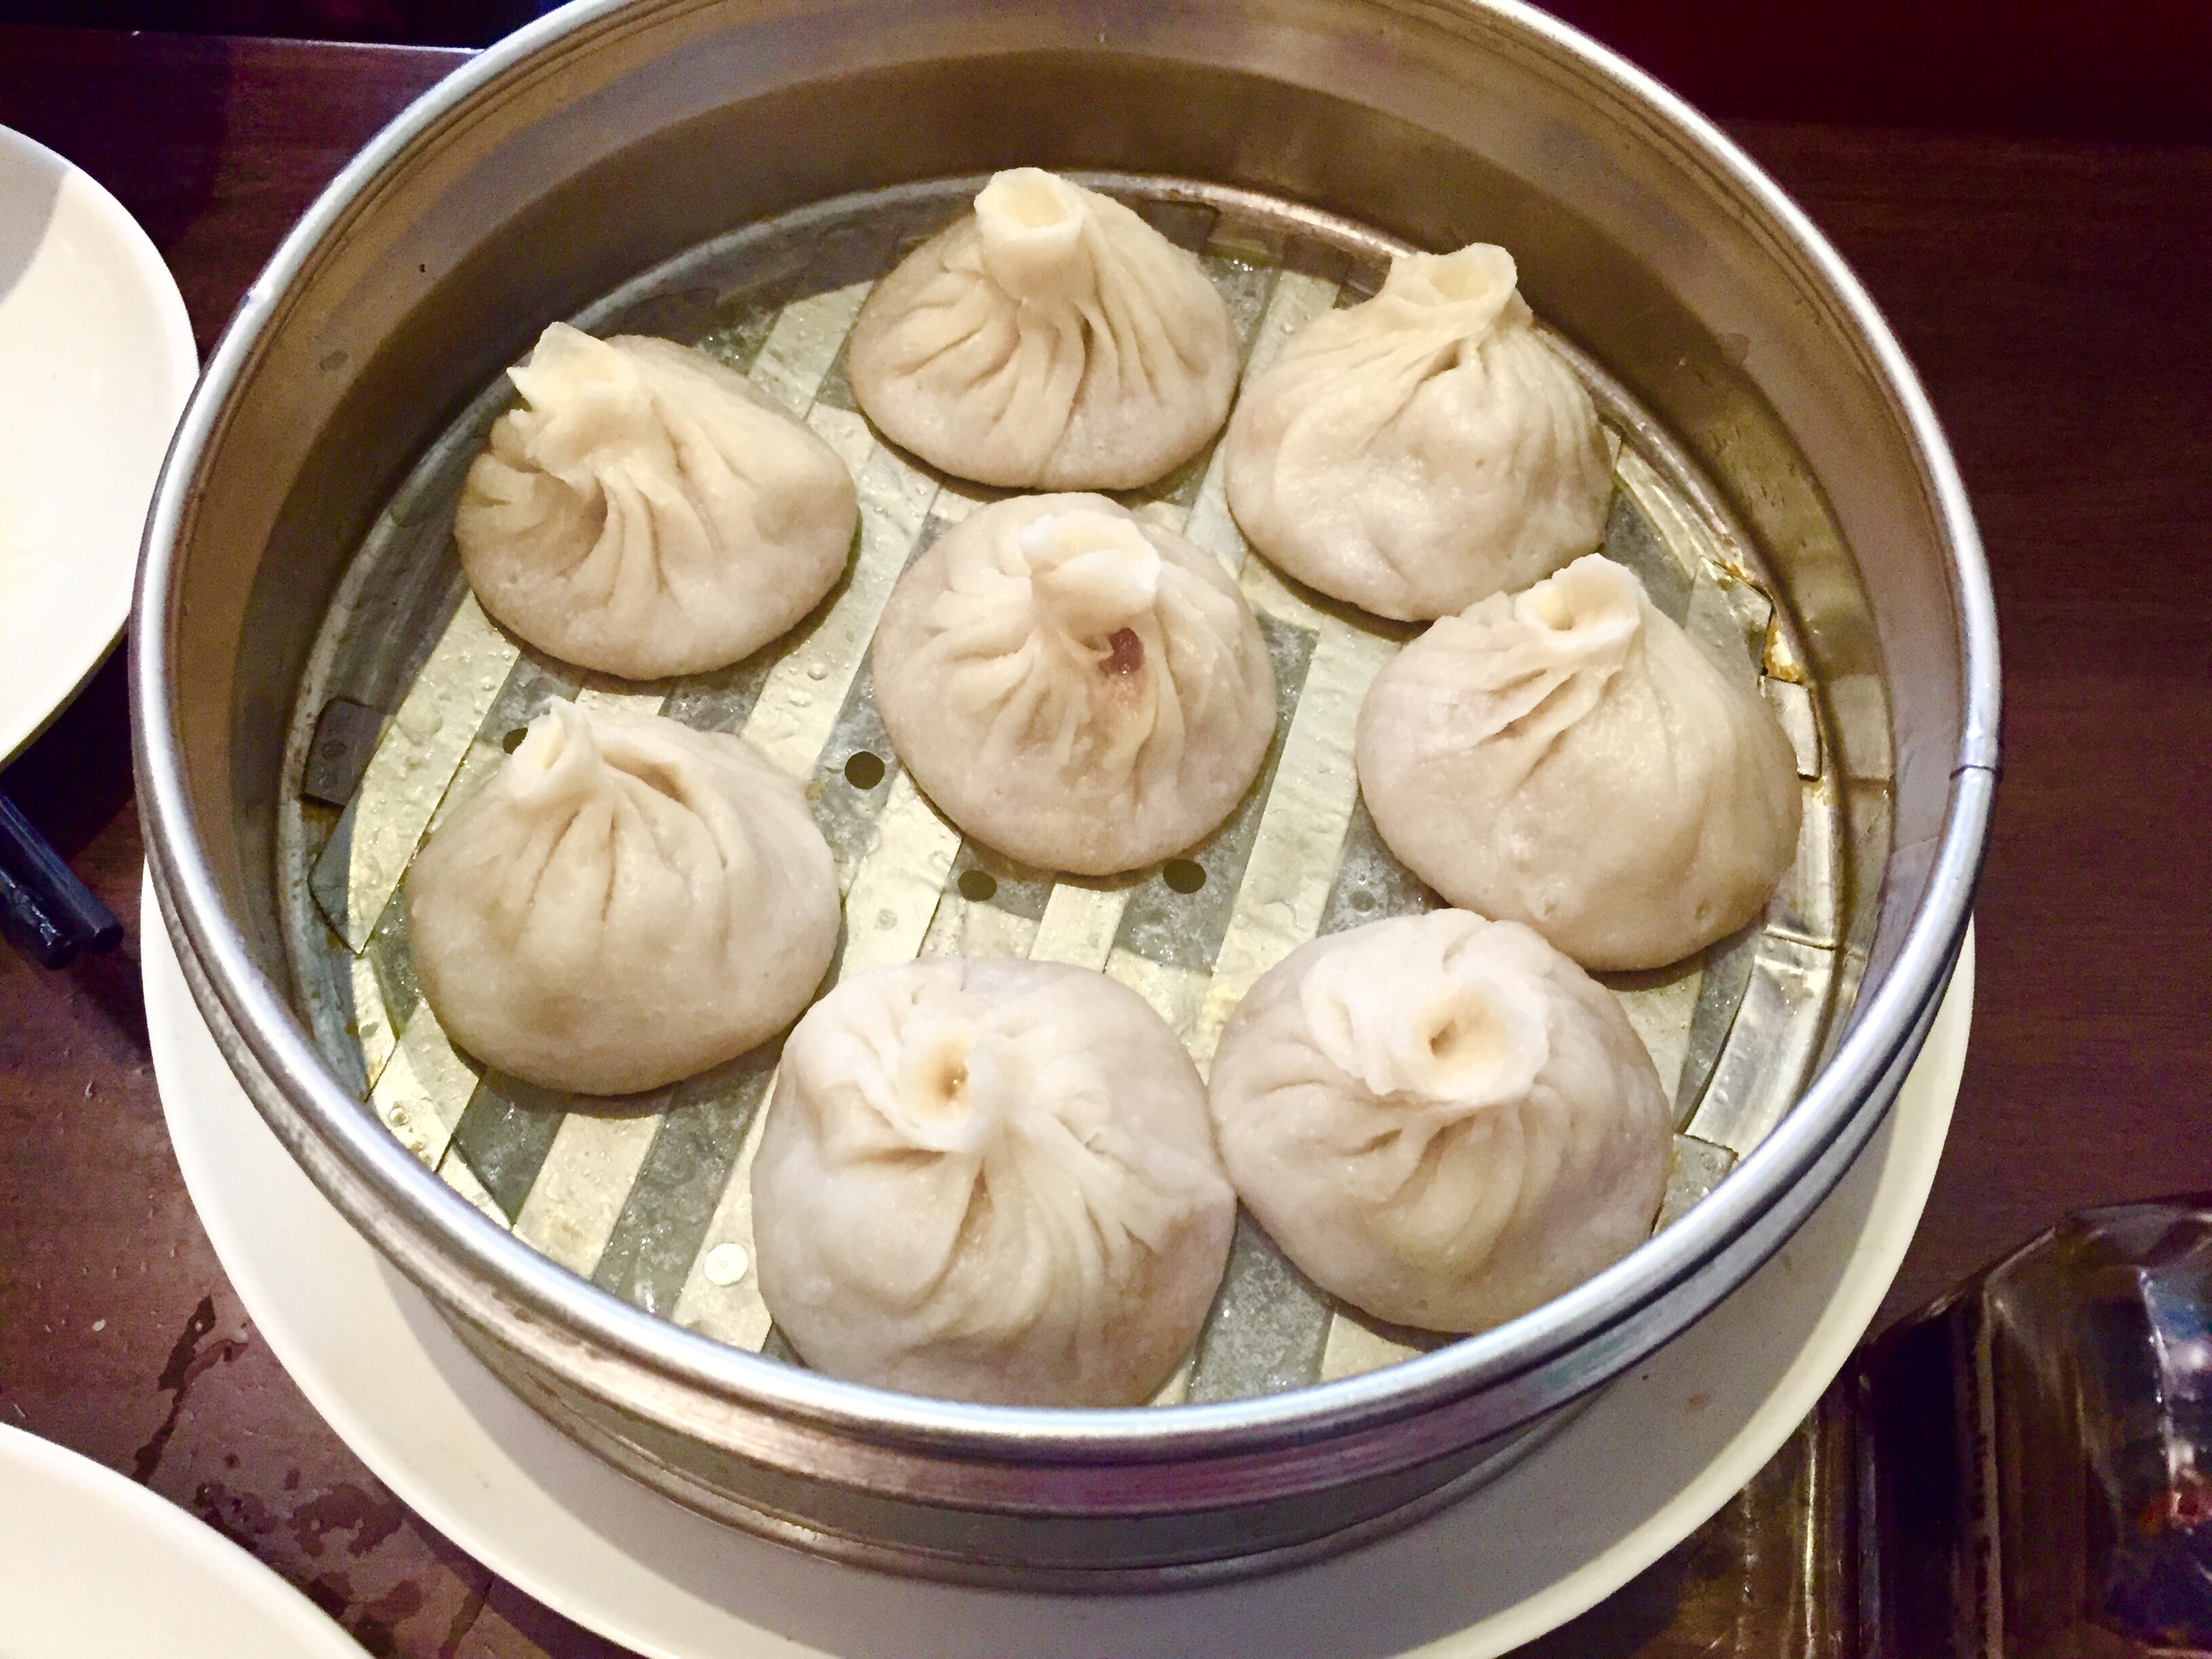 Dim Sum Garden offer soup dumplings to make at home